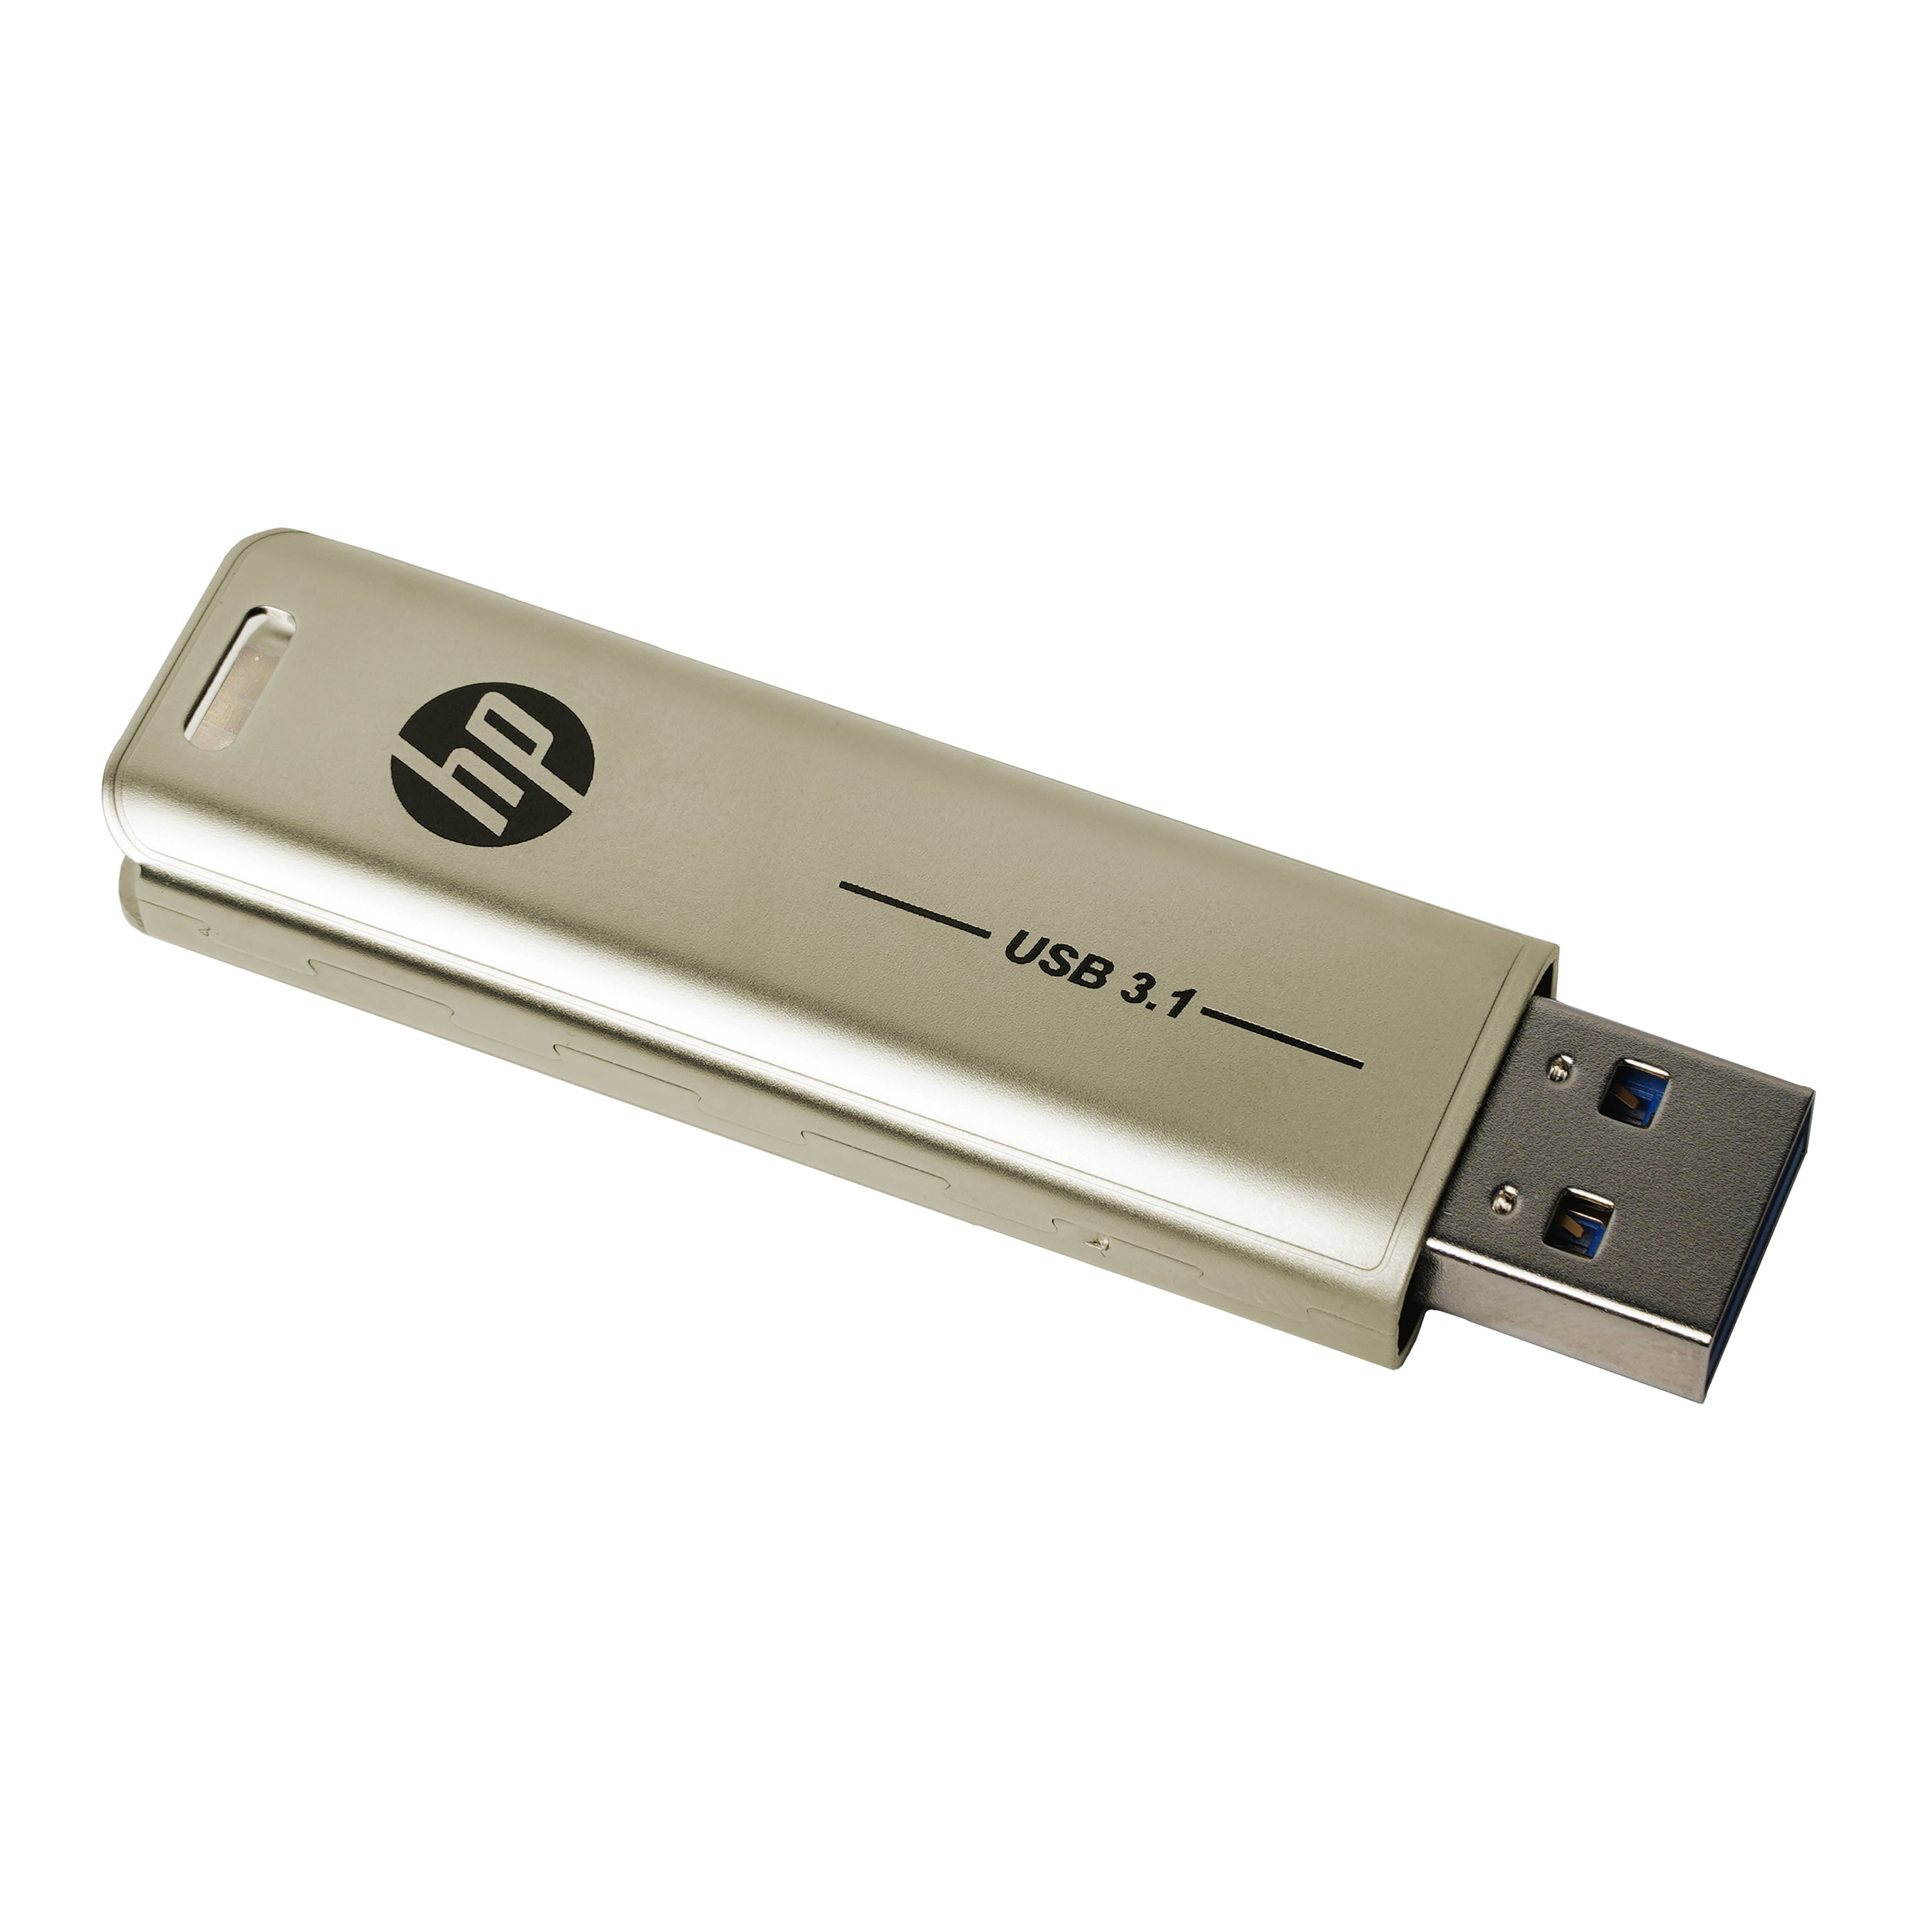 Ydeevne slank Forvent det HP 1TB x796w USB 3.1 Flash Drive - 200MB/s - Walmart.com